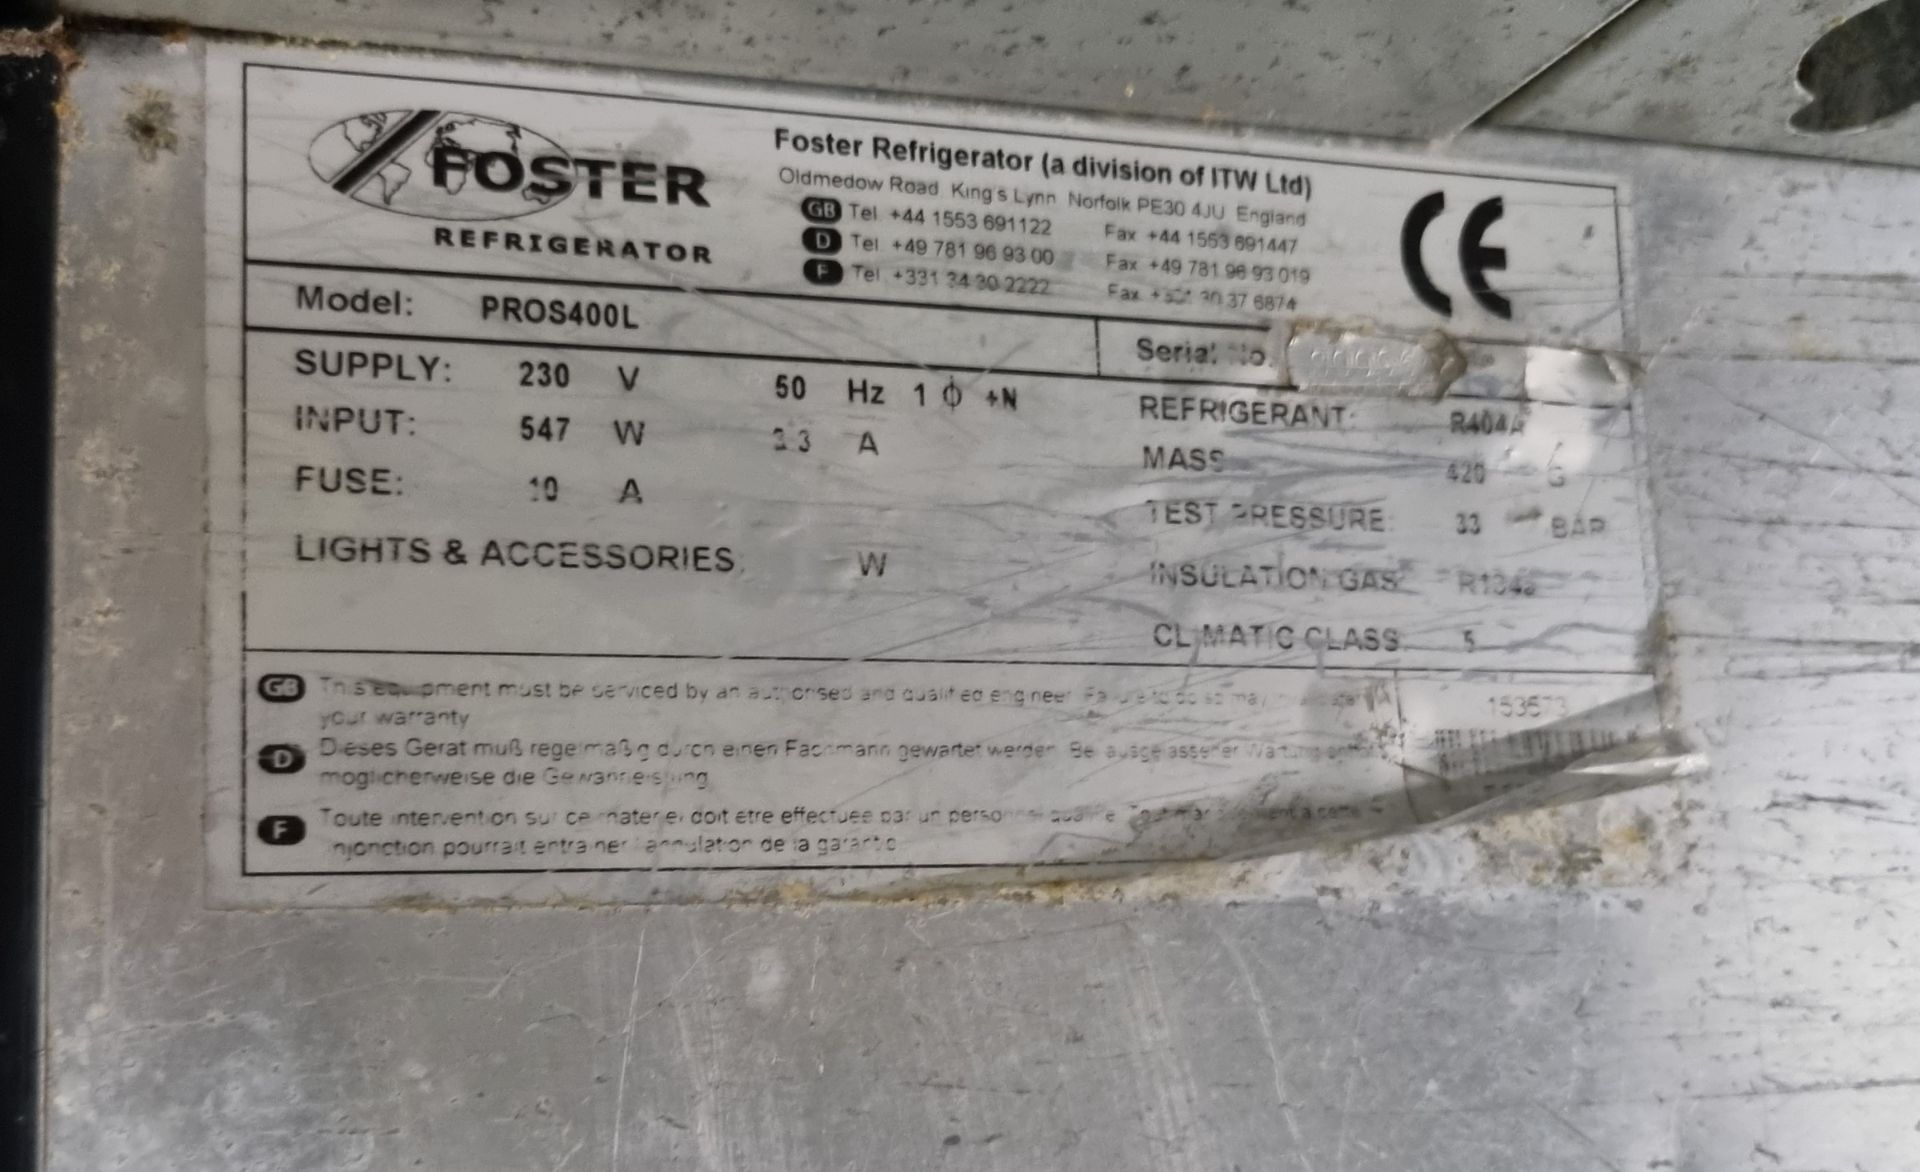 Foster PROS400L stainless steel single door free stand freezer - W 700 x D 700 x H 1800mm - Bild 4 aus 6